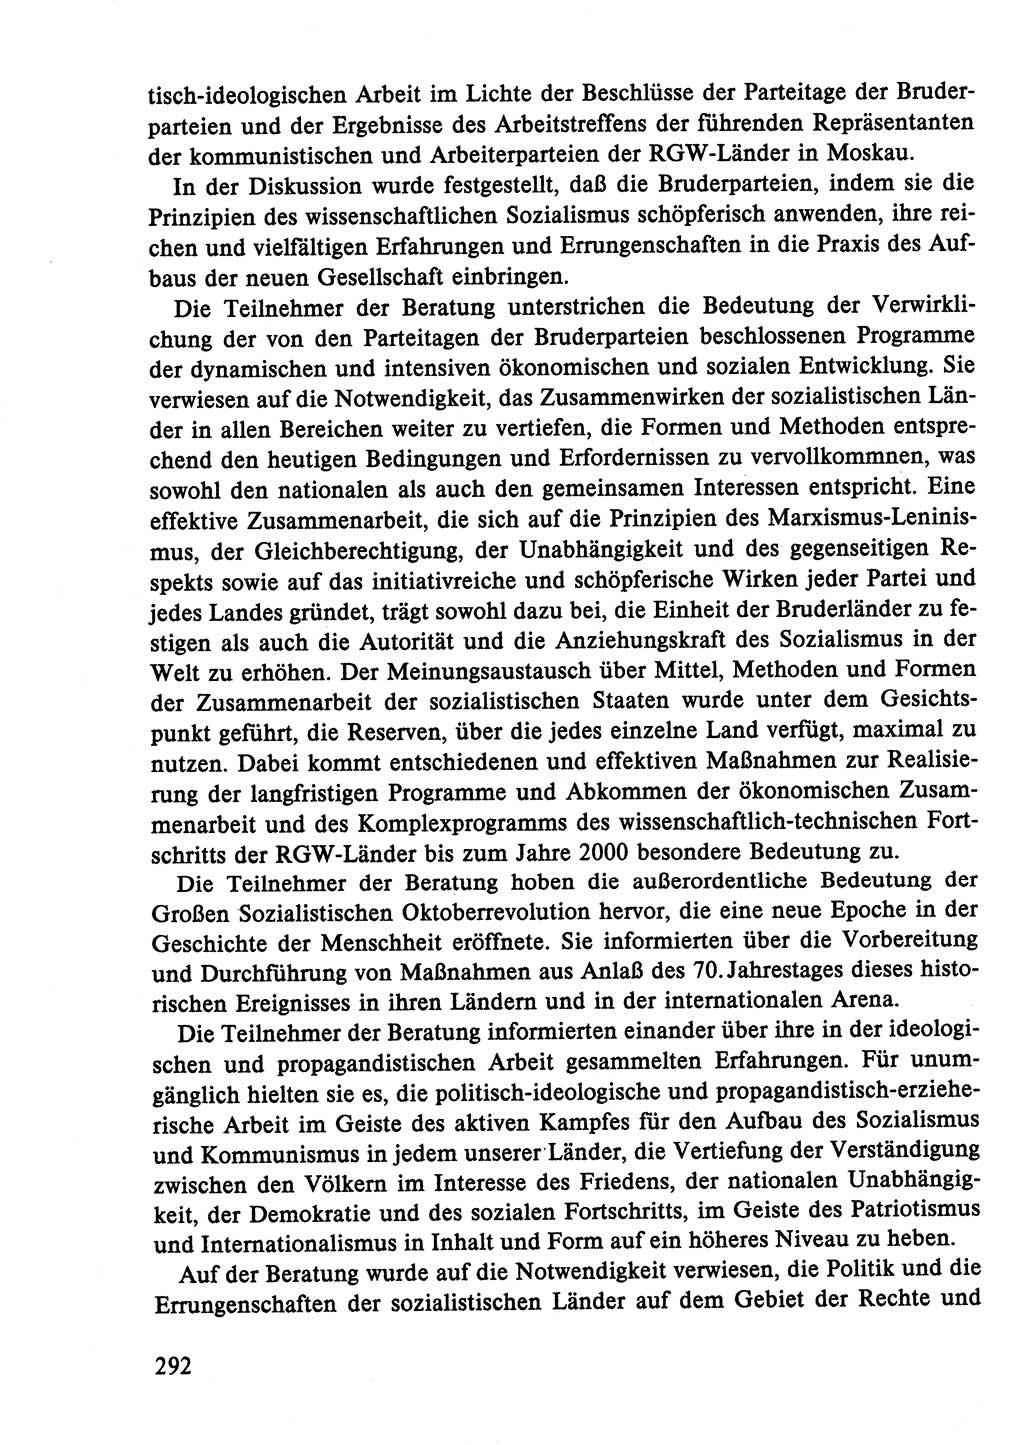 Dokumente der Sozialistischen Einheitspartei Deutschlands (SED) [Deutsche Demokratische Republik (DDR)] 1986-1987, Seite 292 (Dok. SED DDR 1986-1987, S. 292)